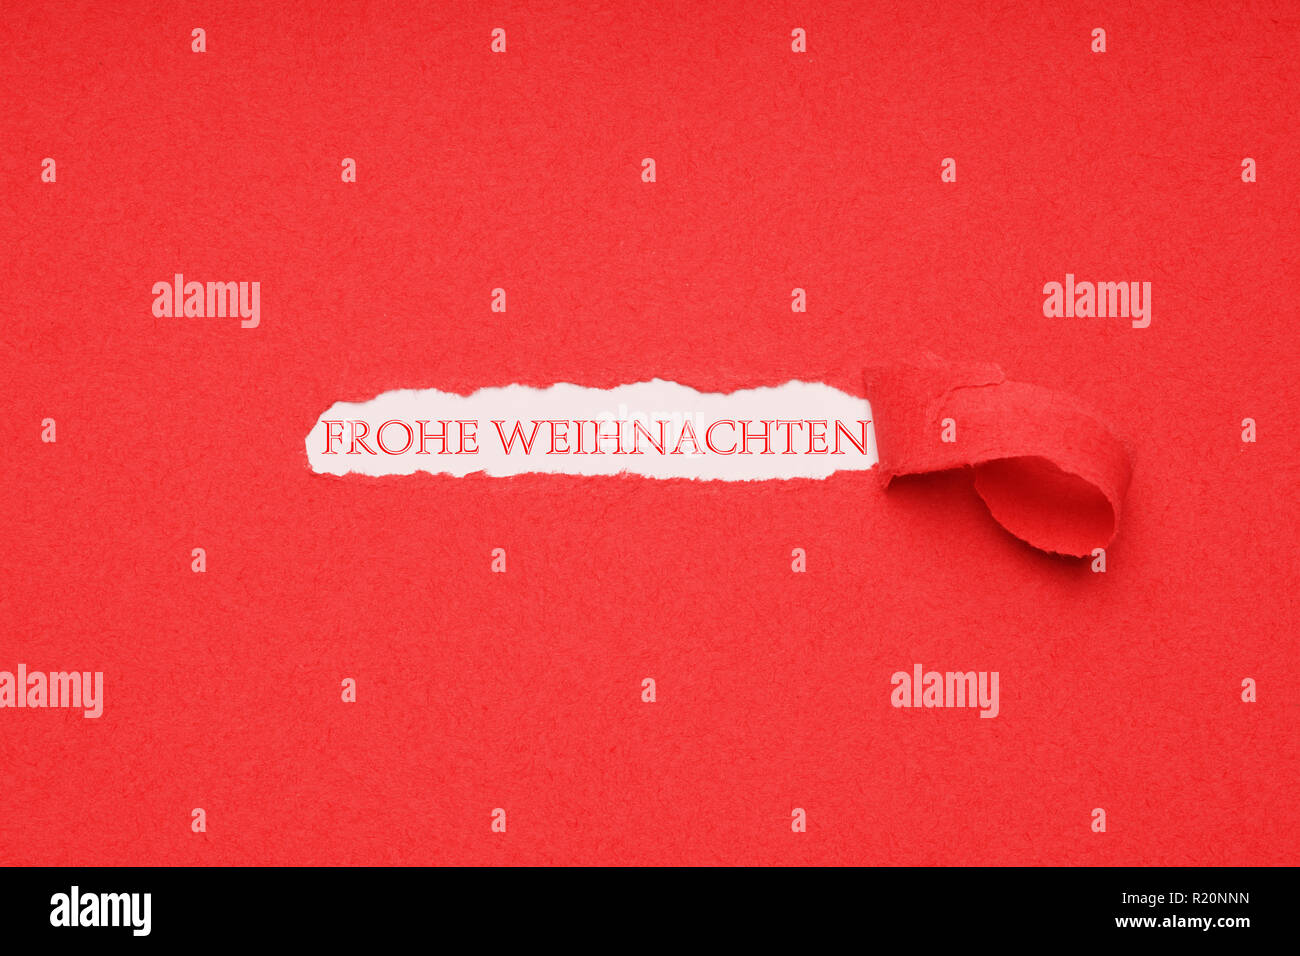 Frohe Weihnachten est allemand pour le joyeux noël Banque D'Images